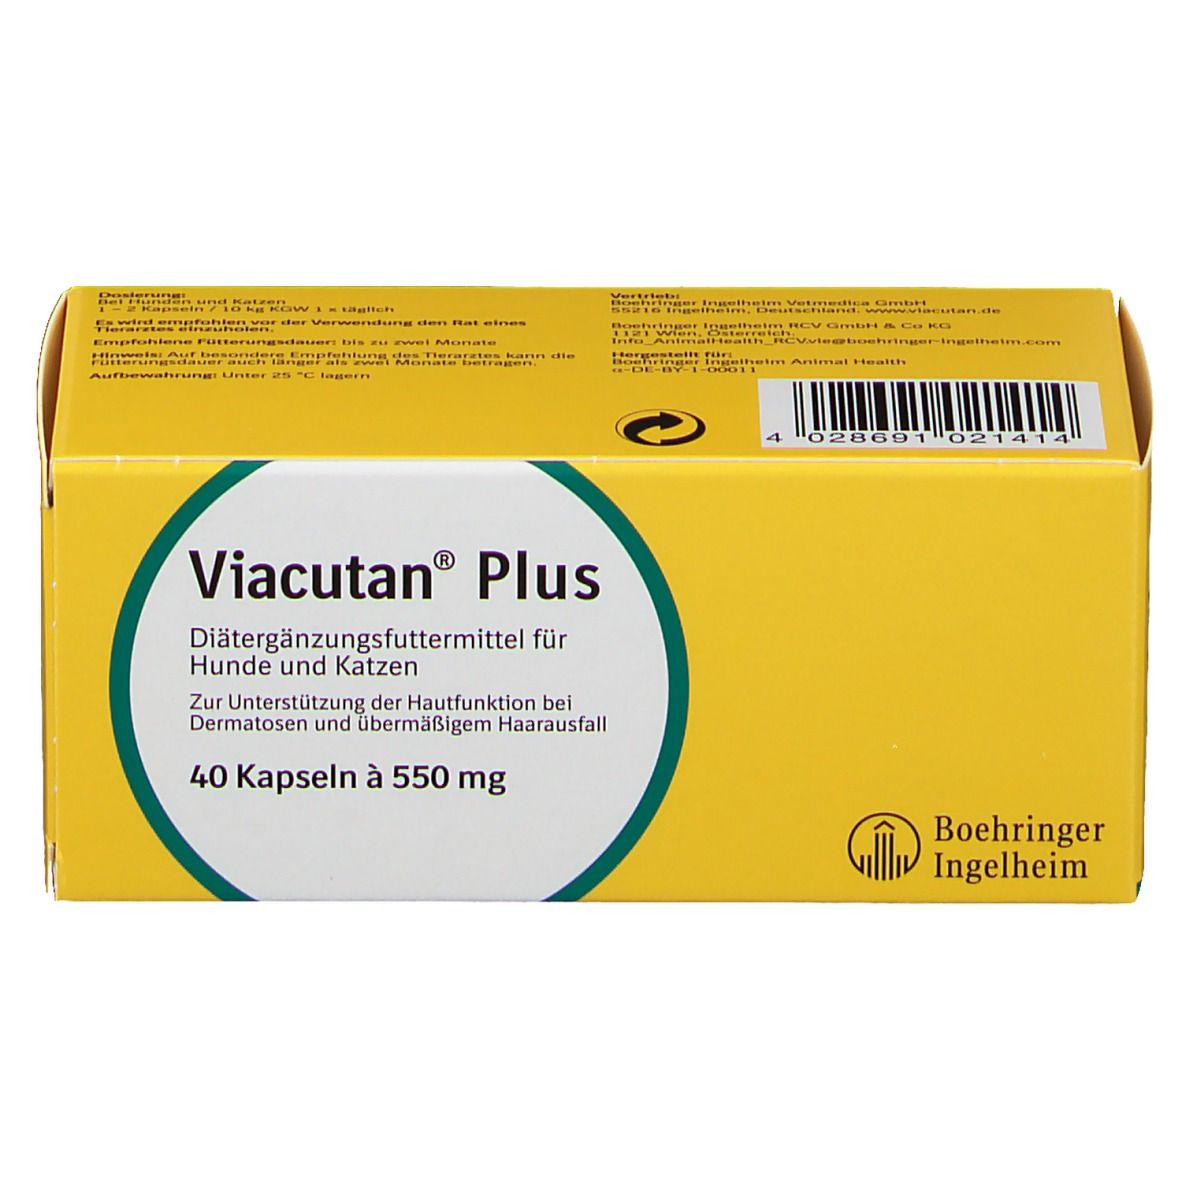 Viacutan® Plus